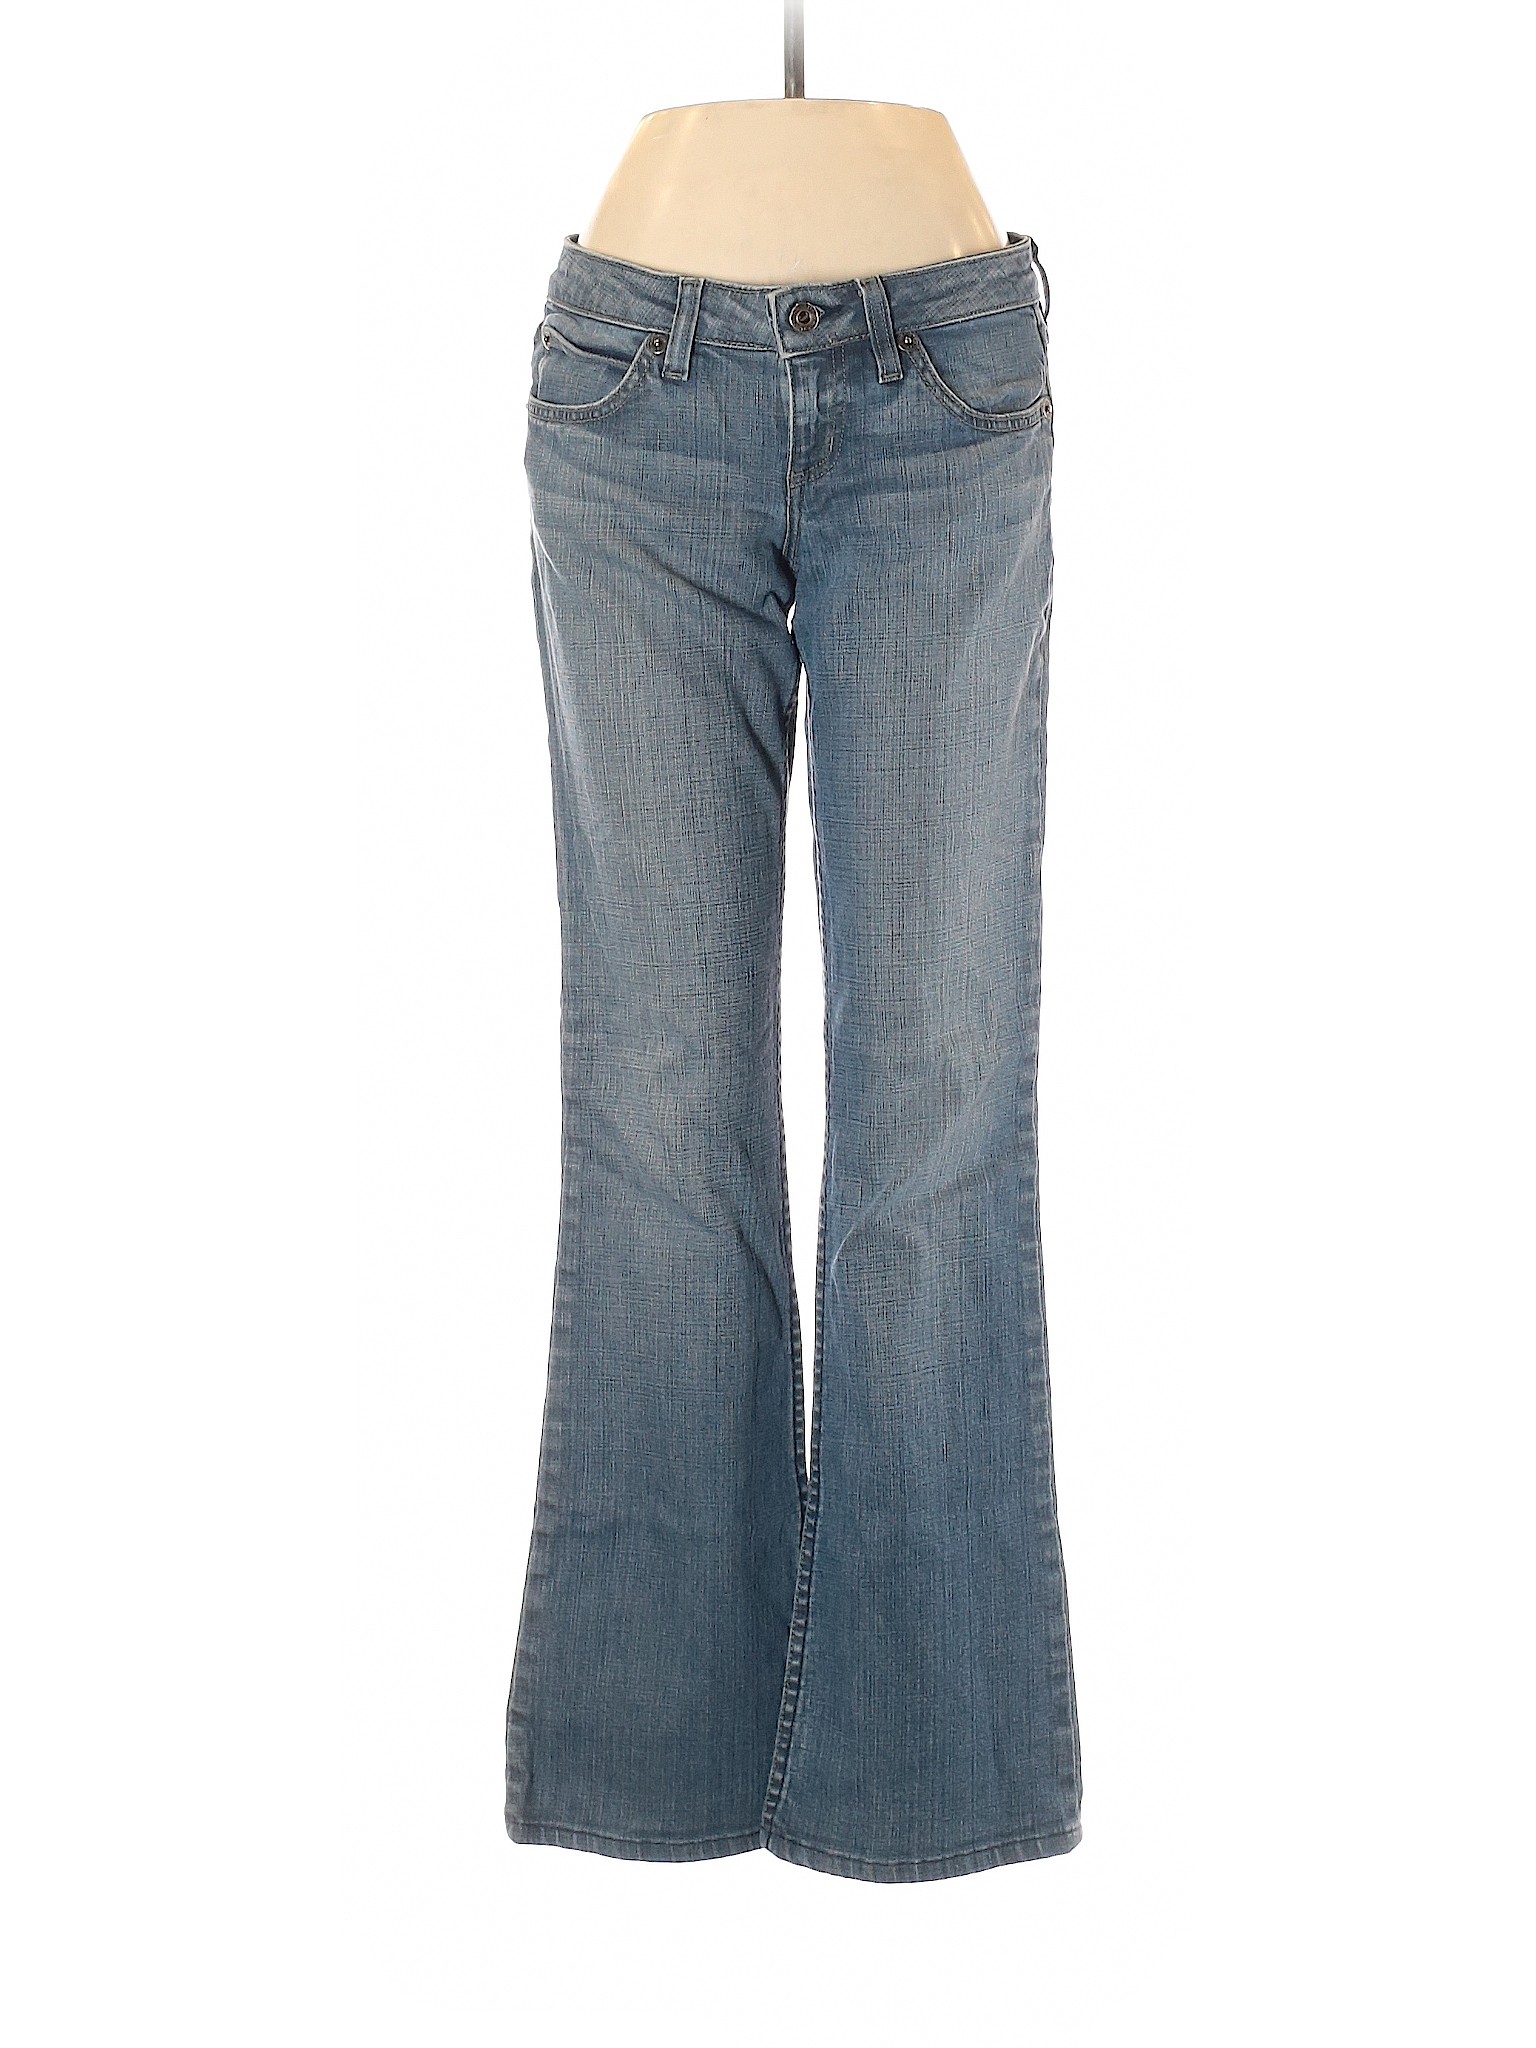 Juicy Couture Women Blue Jeans 26W | eBay